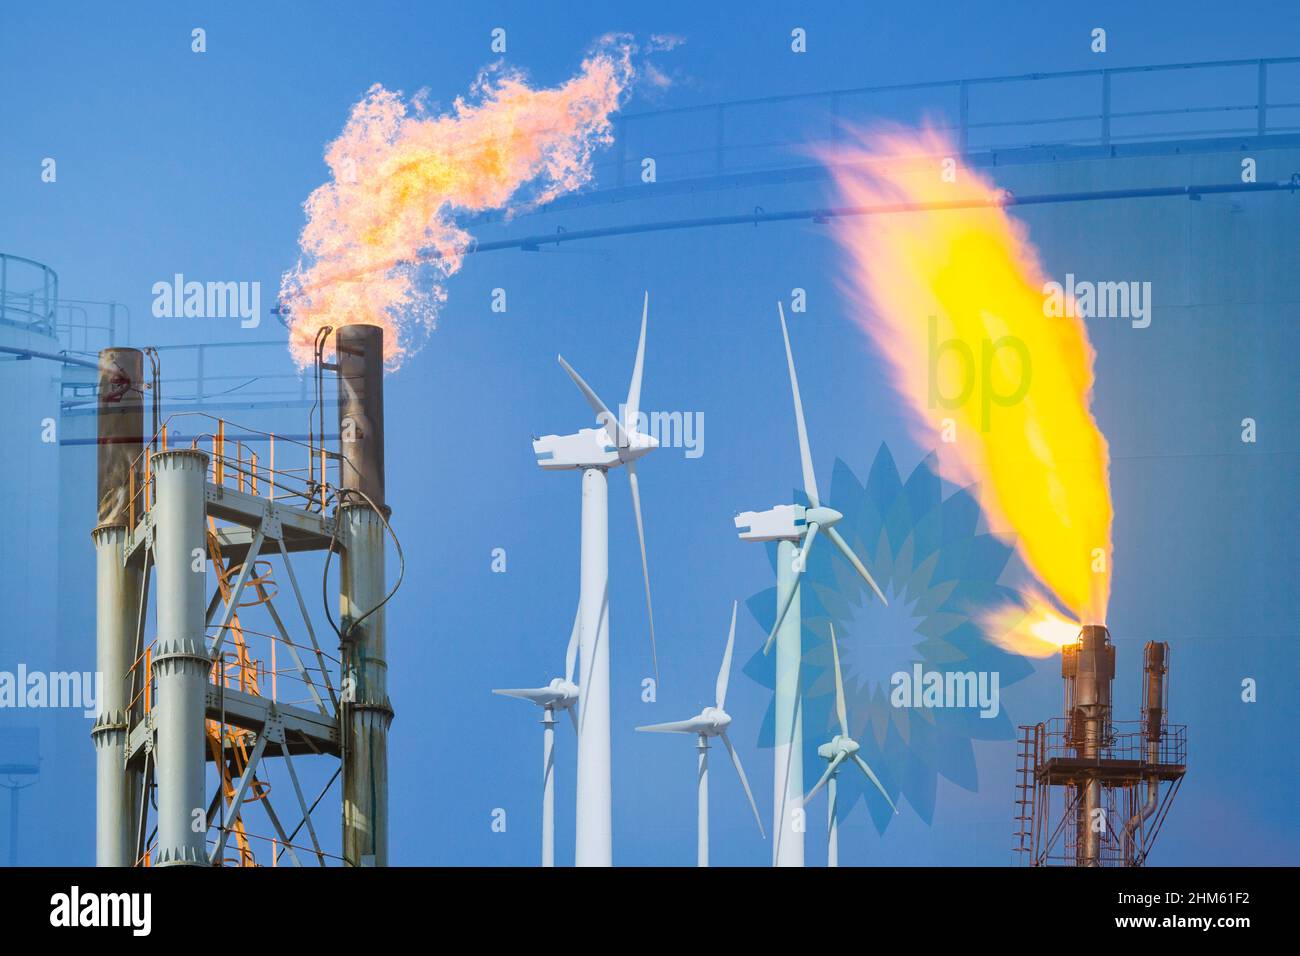 BP aceite, depósitos de almacenamiento de combustible. Imagen conceptual de combustibles fósiles, gas/petróleo del Mar del Norte, energías renovables, cambio climático, cero neto 2050, beneficios de la industria petrolera... Foto de stock